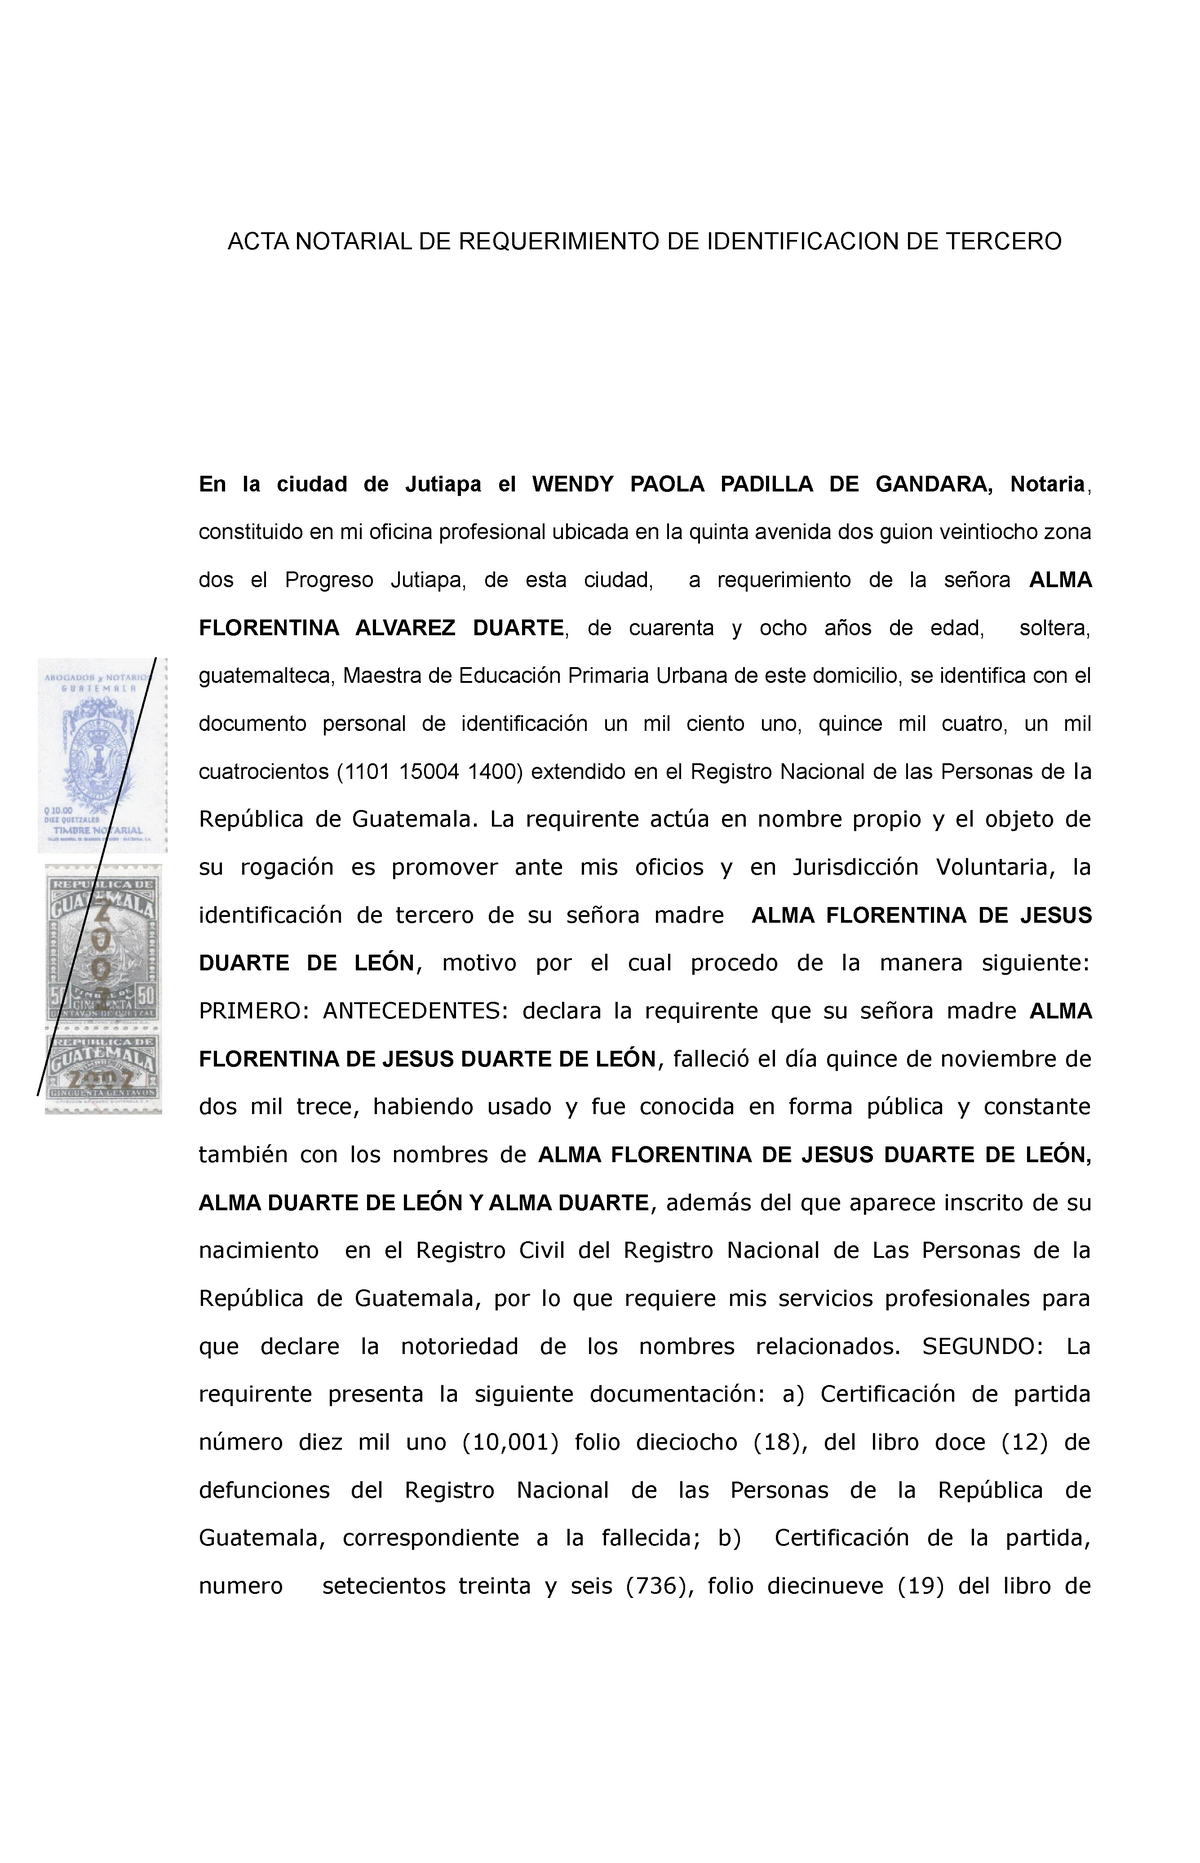 1 ACTA Notarial DE Requerimiento identificacion de tercero - ACTA NOTARIAL  DE REQUERIMIENTO DE - Studocu